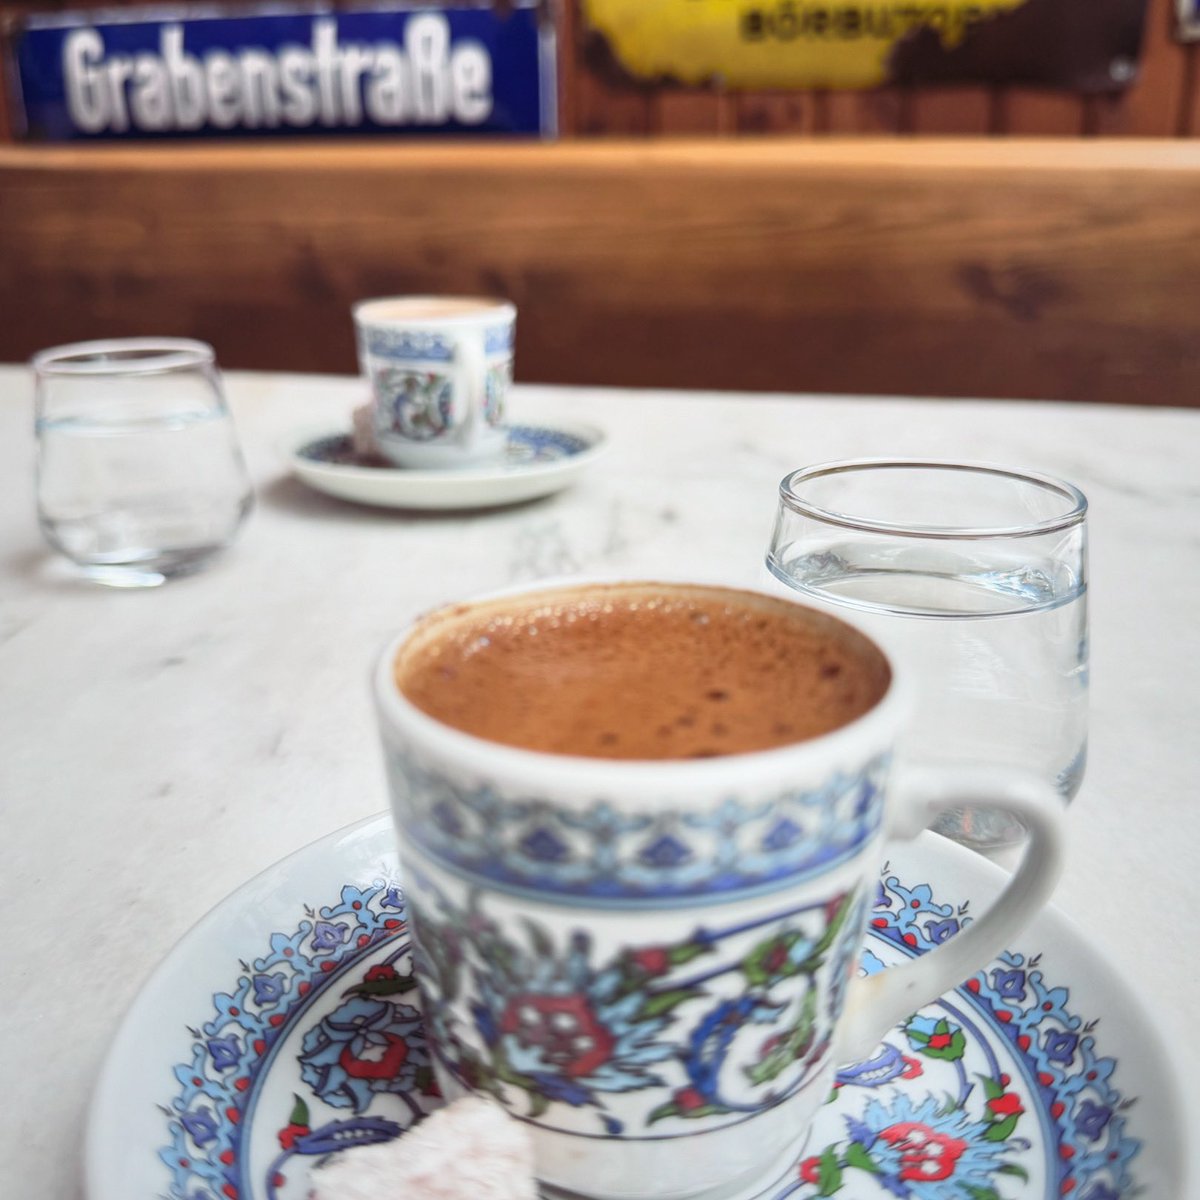 Ferah kahvelerimiz olsun ☕️ ☕️ 🍫 #kahve #turkishcoffee #türkkahvesi #coffee